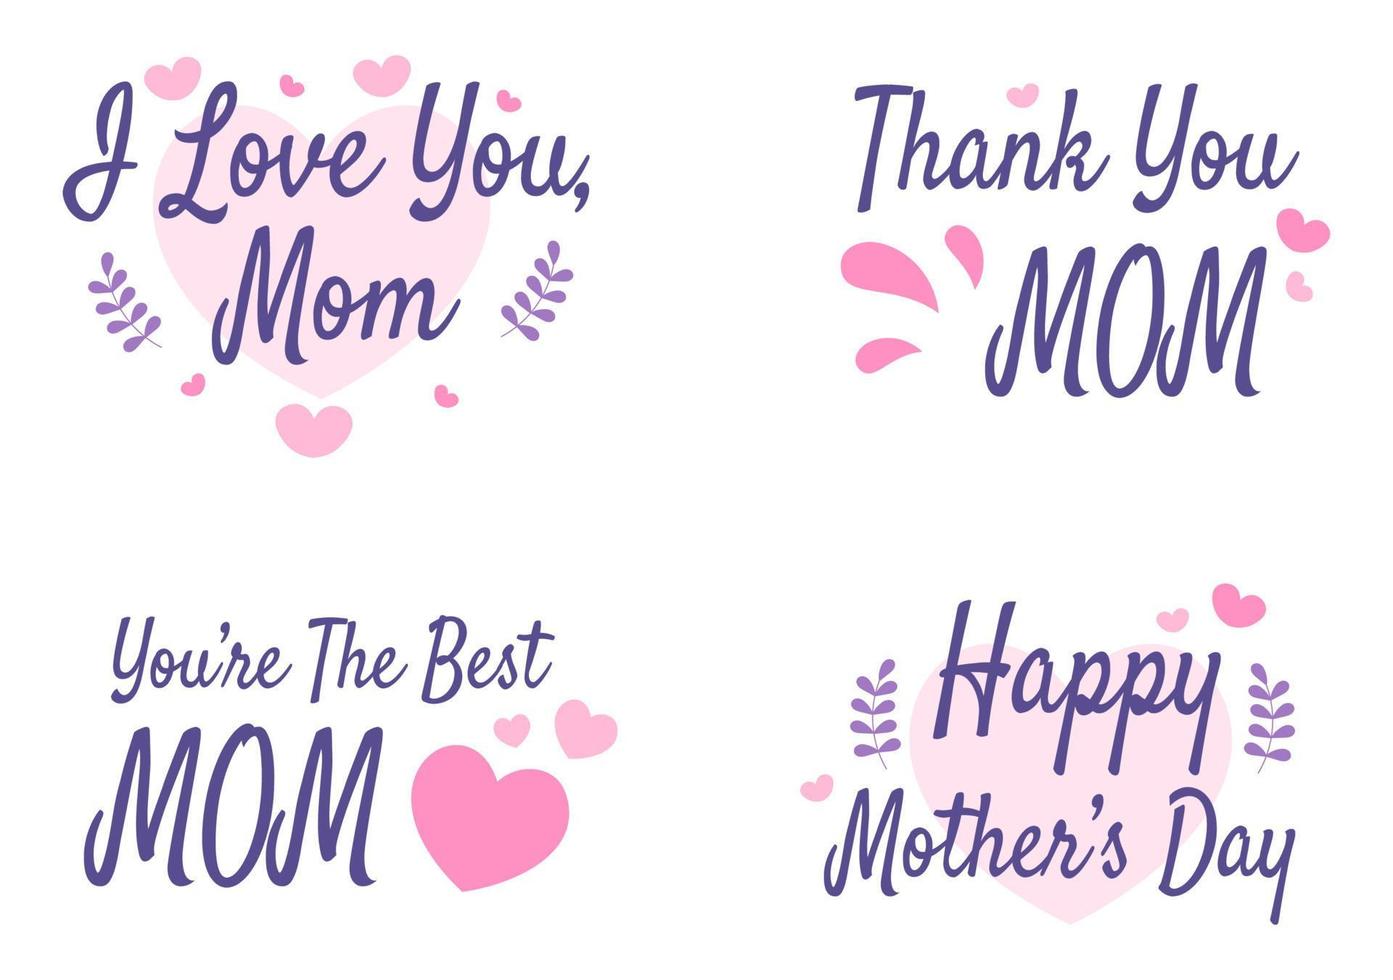 gelukkige moederdag met prachtige bloesembloemen en kalligrafietekst die op 22 december wordt herdacht voor een wenskaart of poster met een plat ontwerpillustratie vector